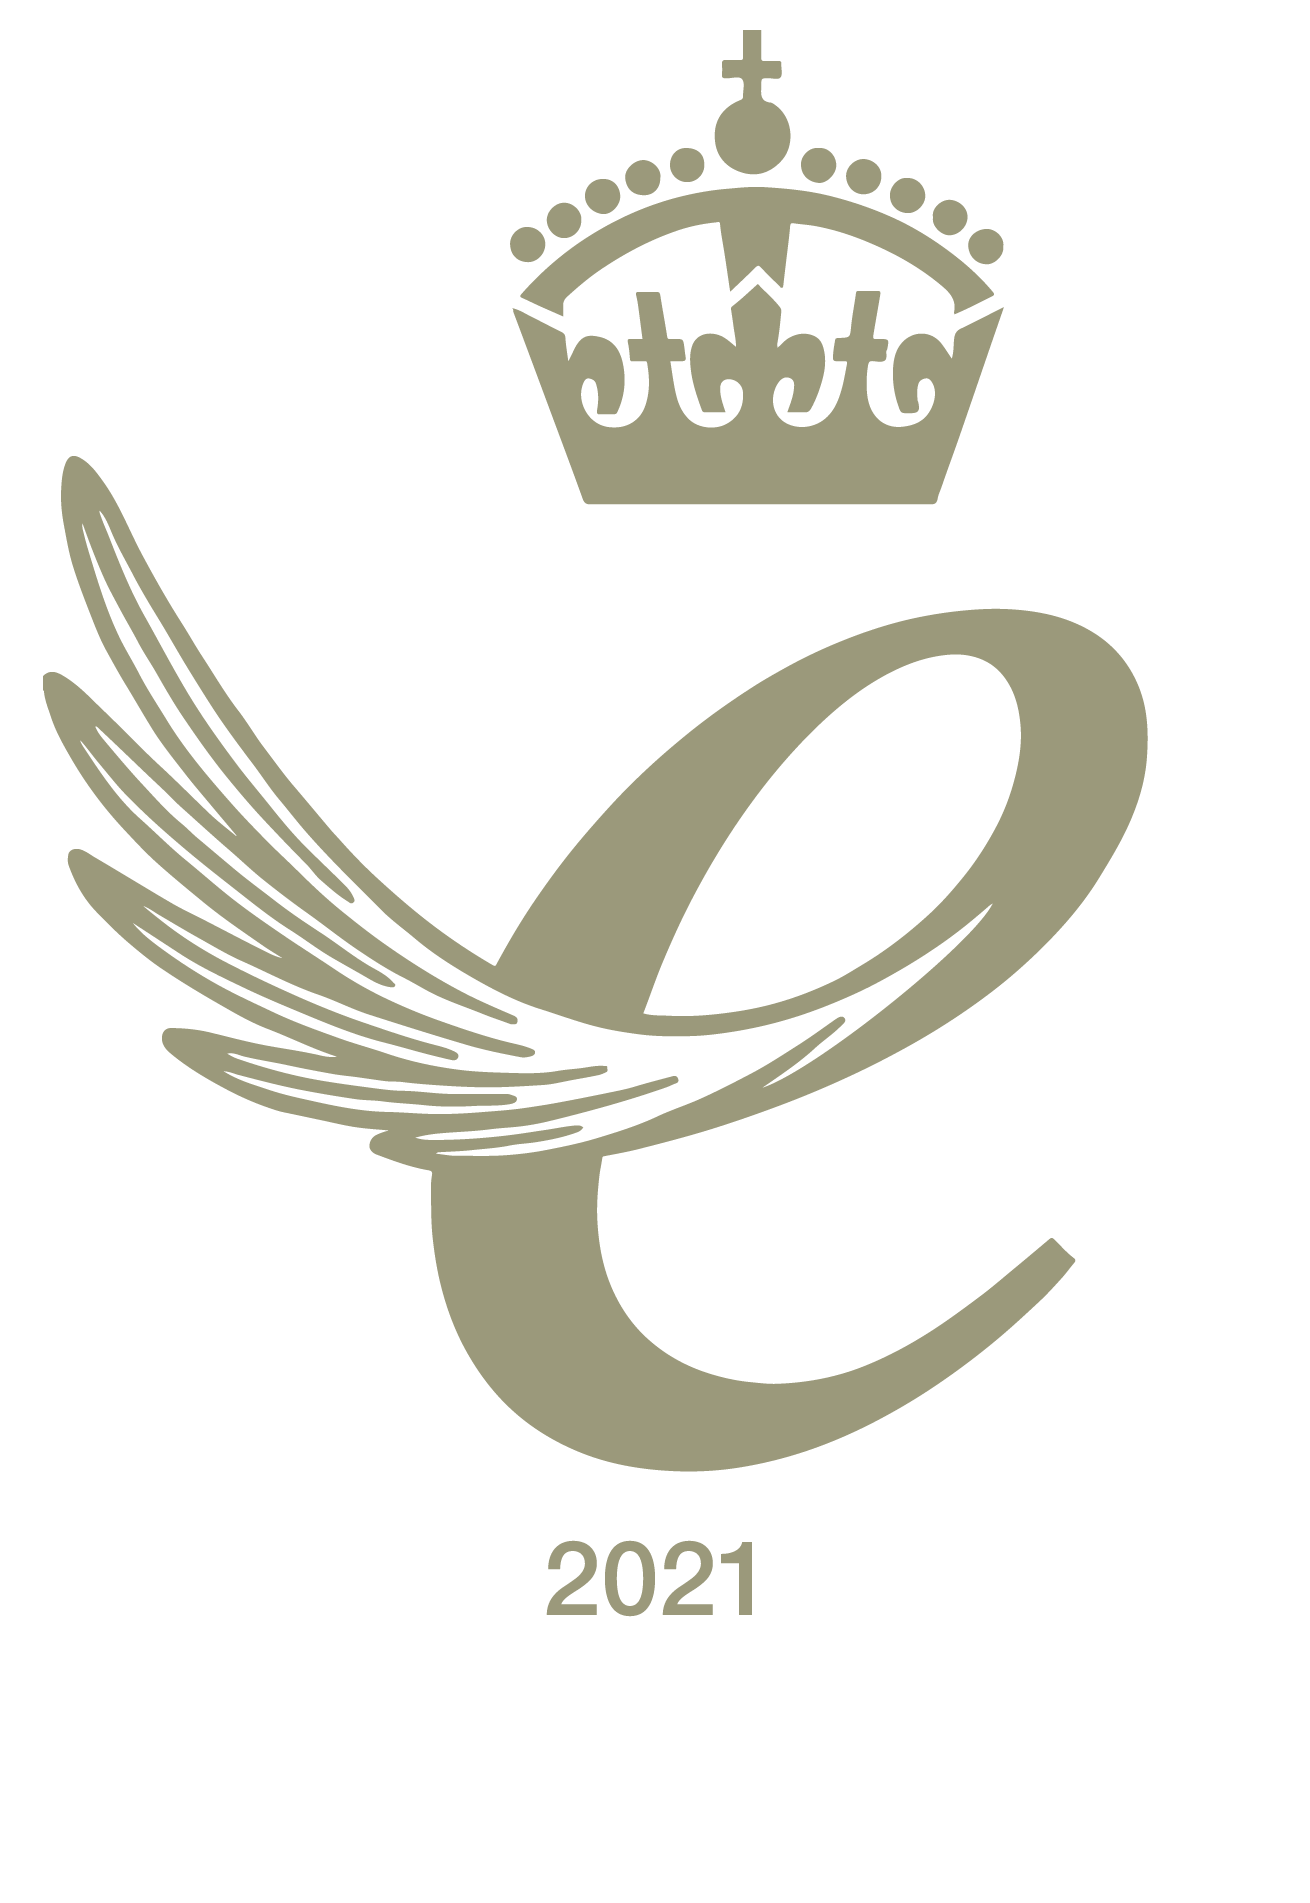 QA-logo2021-digital-_gold